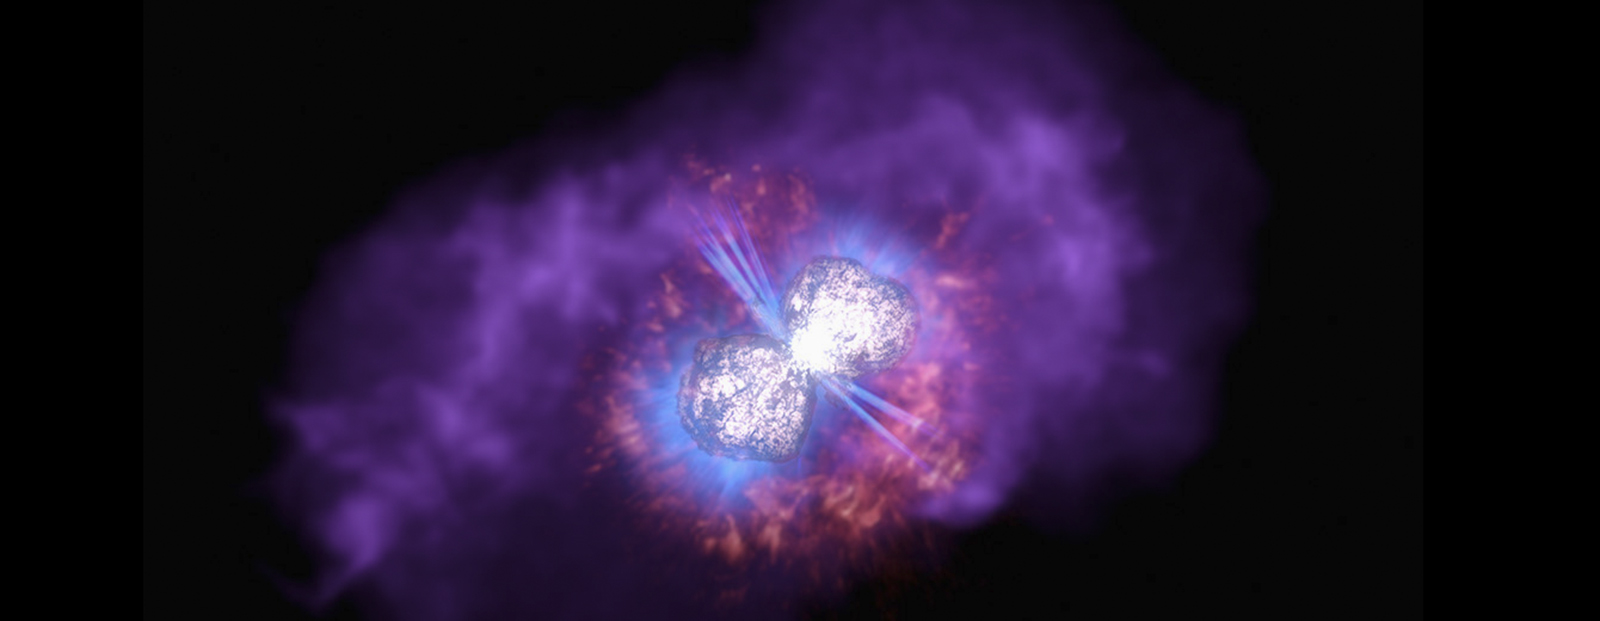 Le système Eta Carinae, enrobé par la nébuleuse de l'Homoncule. © Nasa, ESA